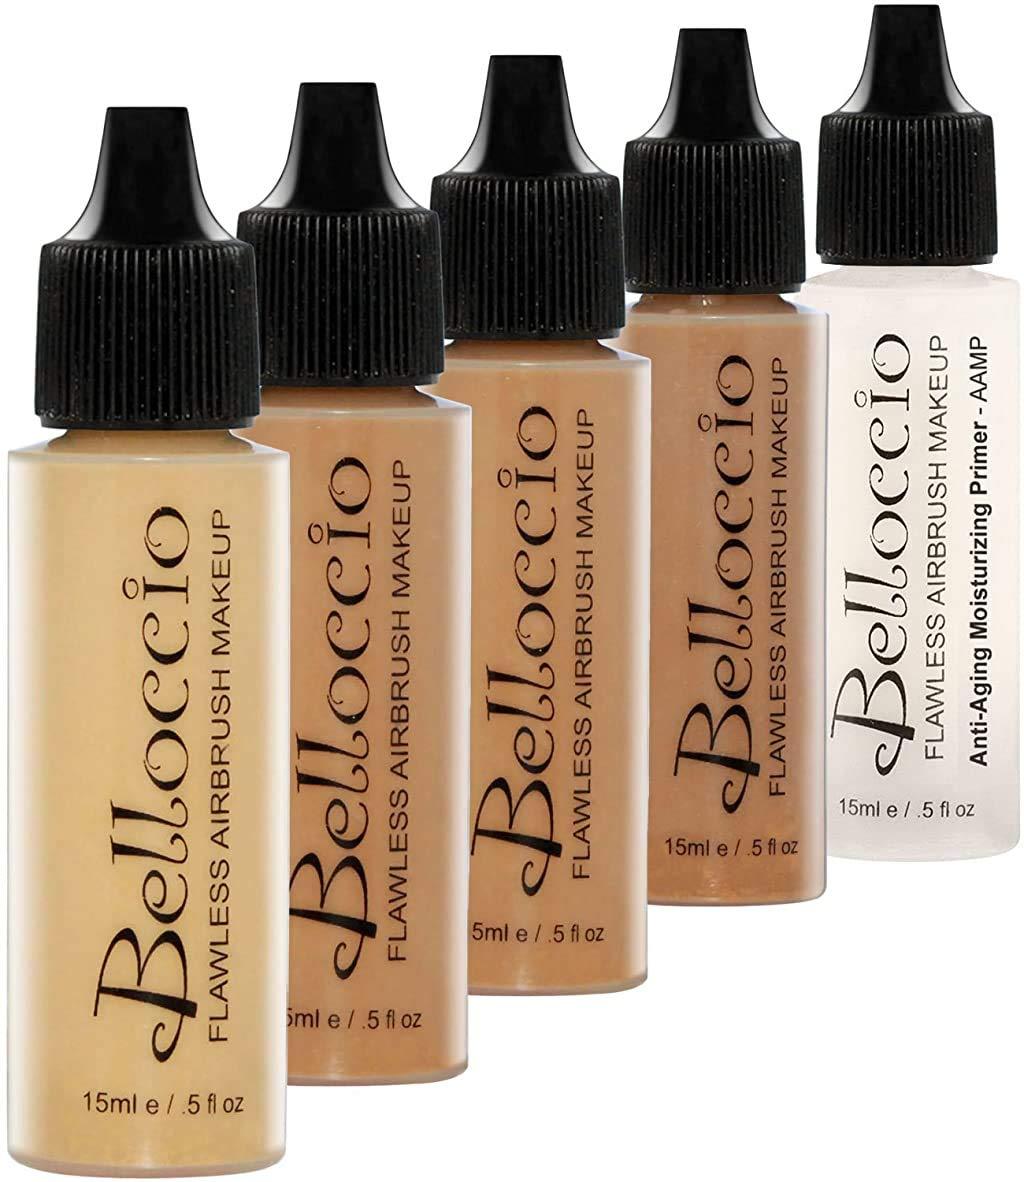 COCOA Color Shade Belloccio Professional Airbrush Makeup Foundation, 1/2 oz.